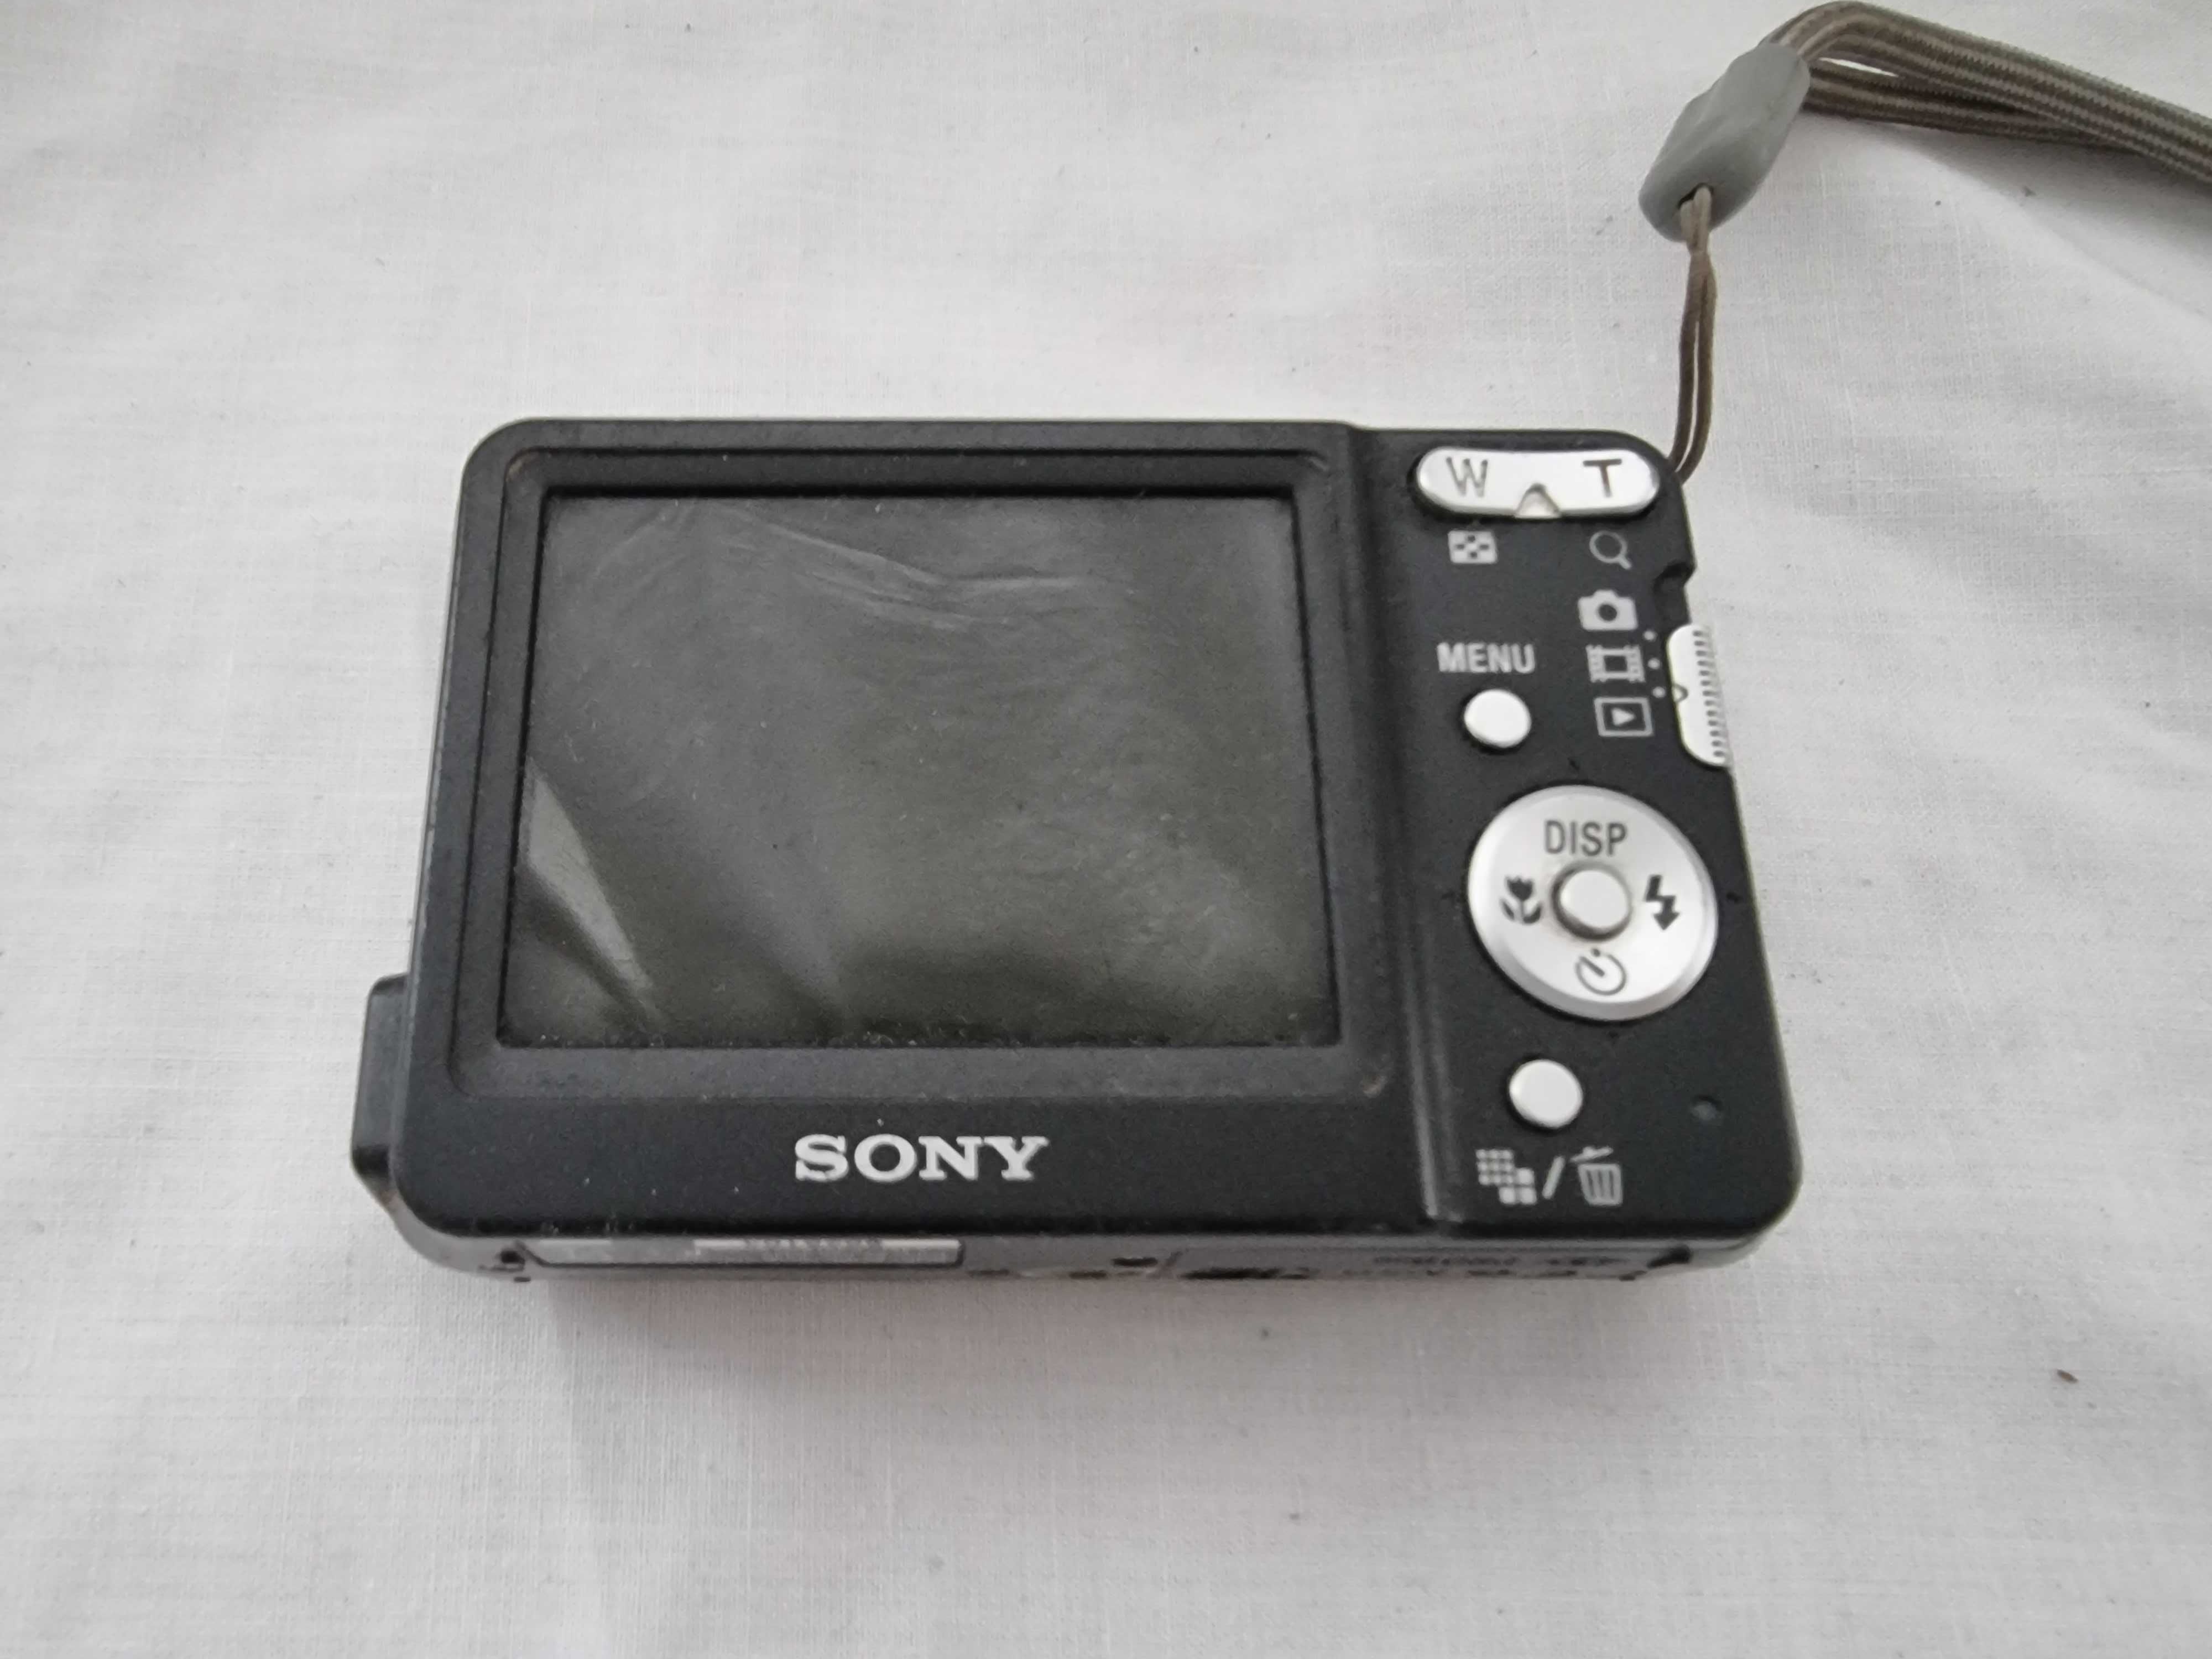 Sony CyberShot DSC - S930 camera foto compacta sau schimb